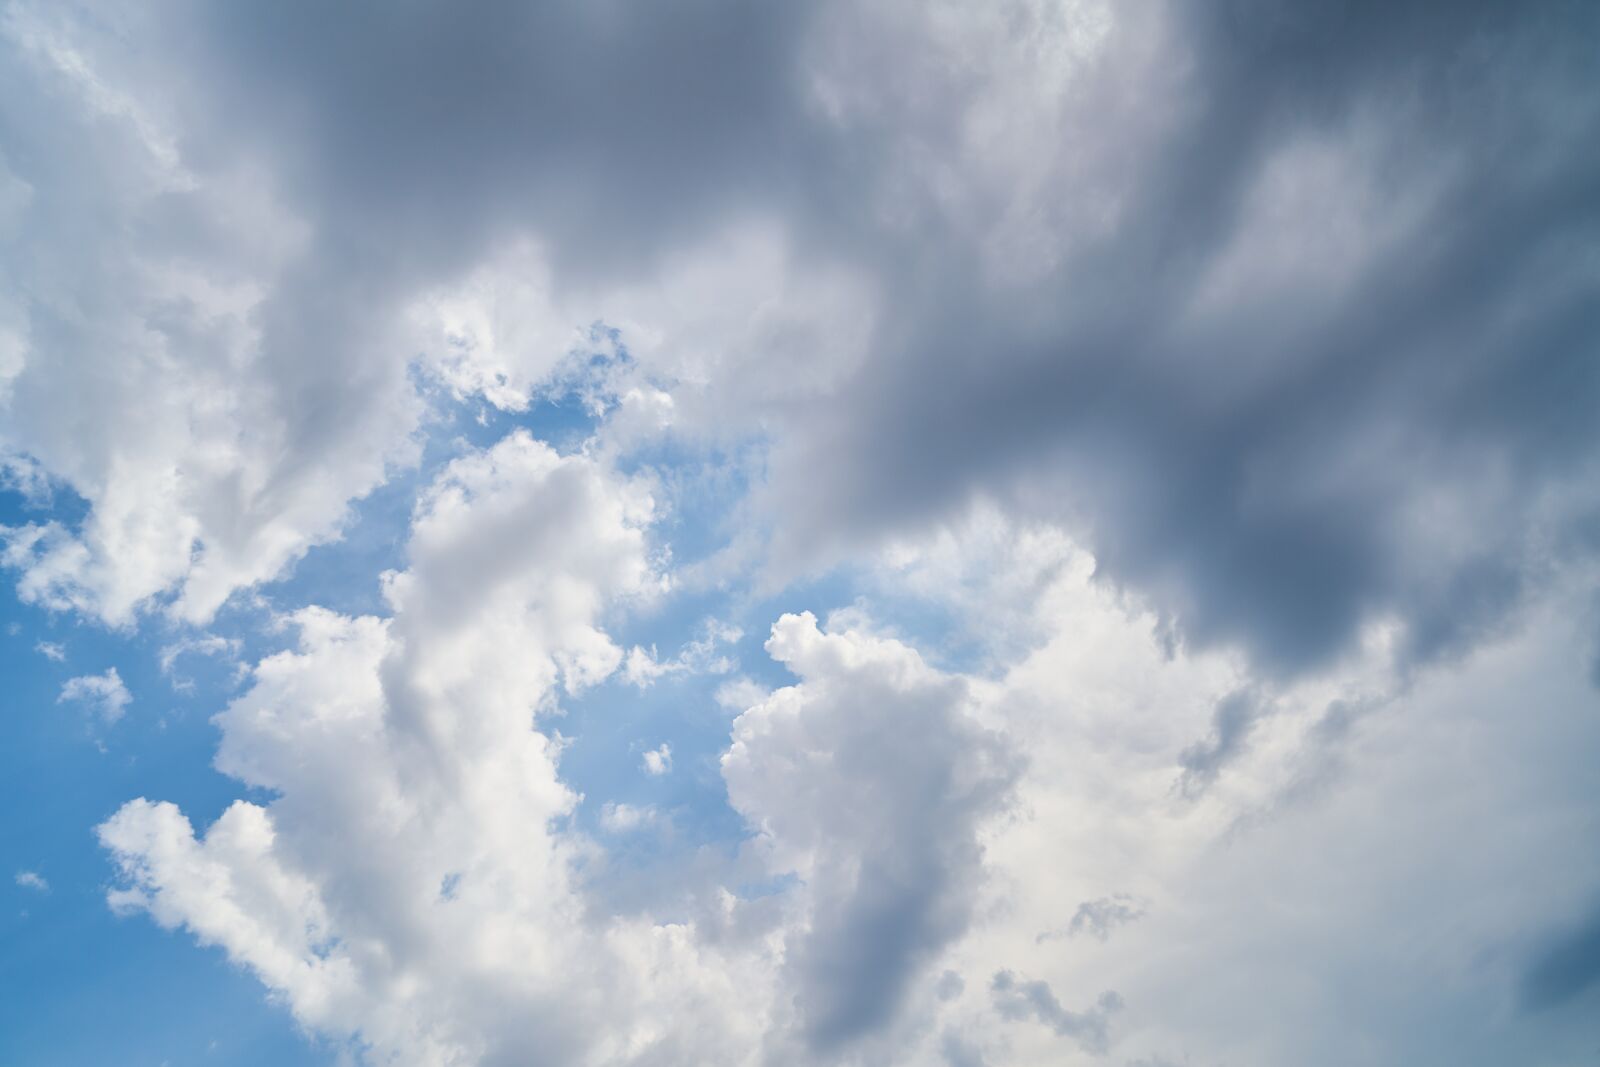 Sony Vario Tessar T* FE 24-70mm F4 ZA OSS sample photo. Cloud, sky, background photography